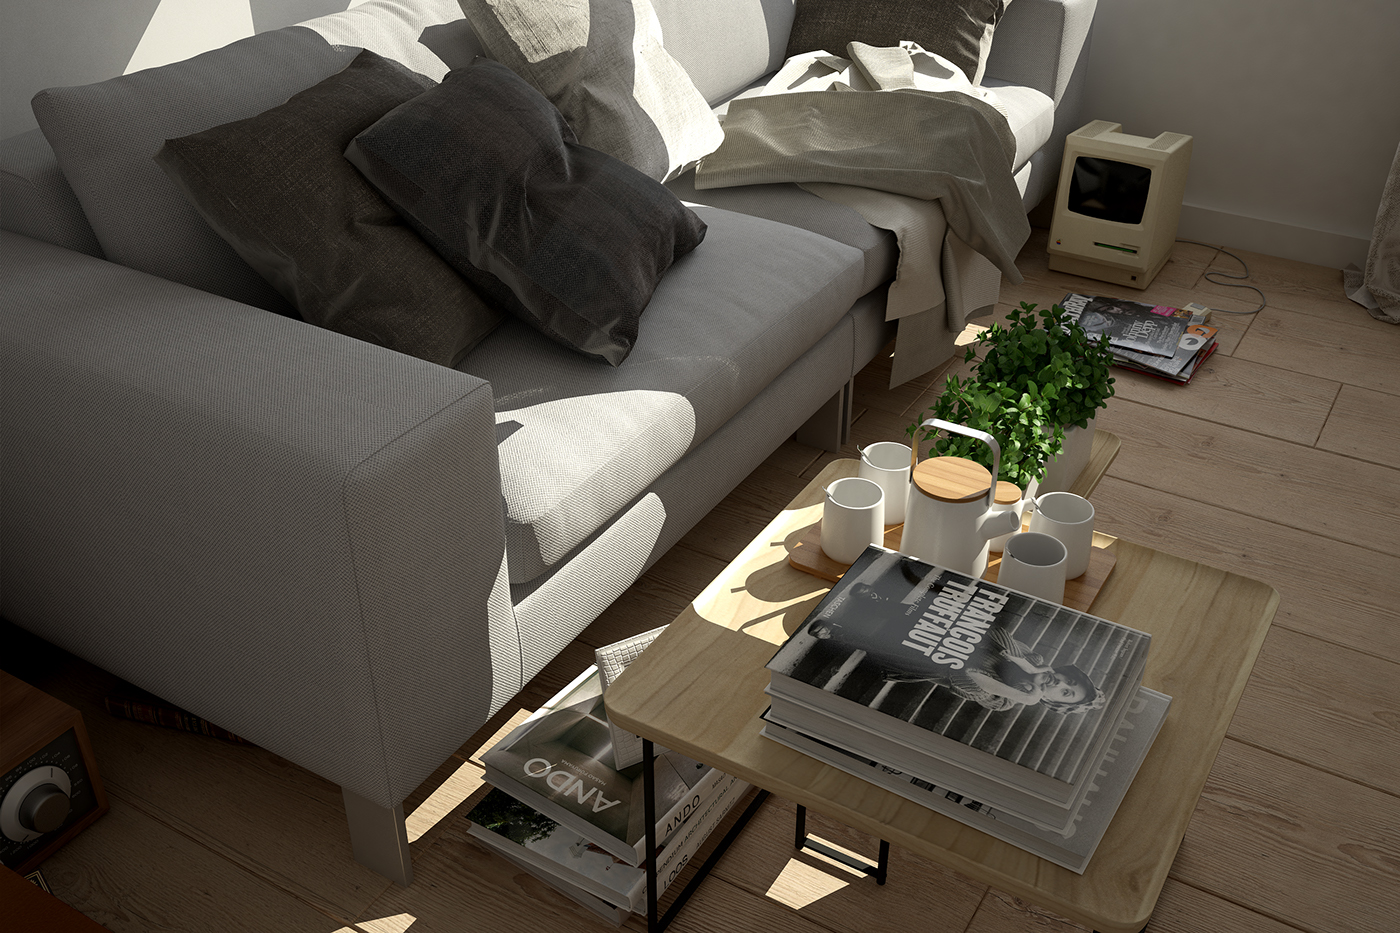 furniture Interior close ups lighting photorealistic design